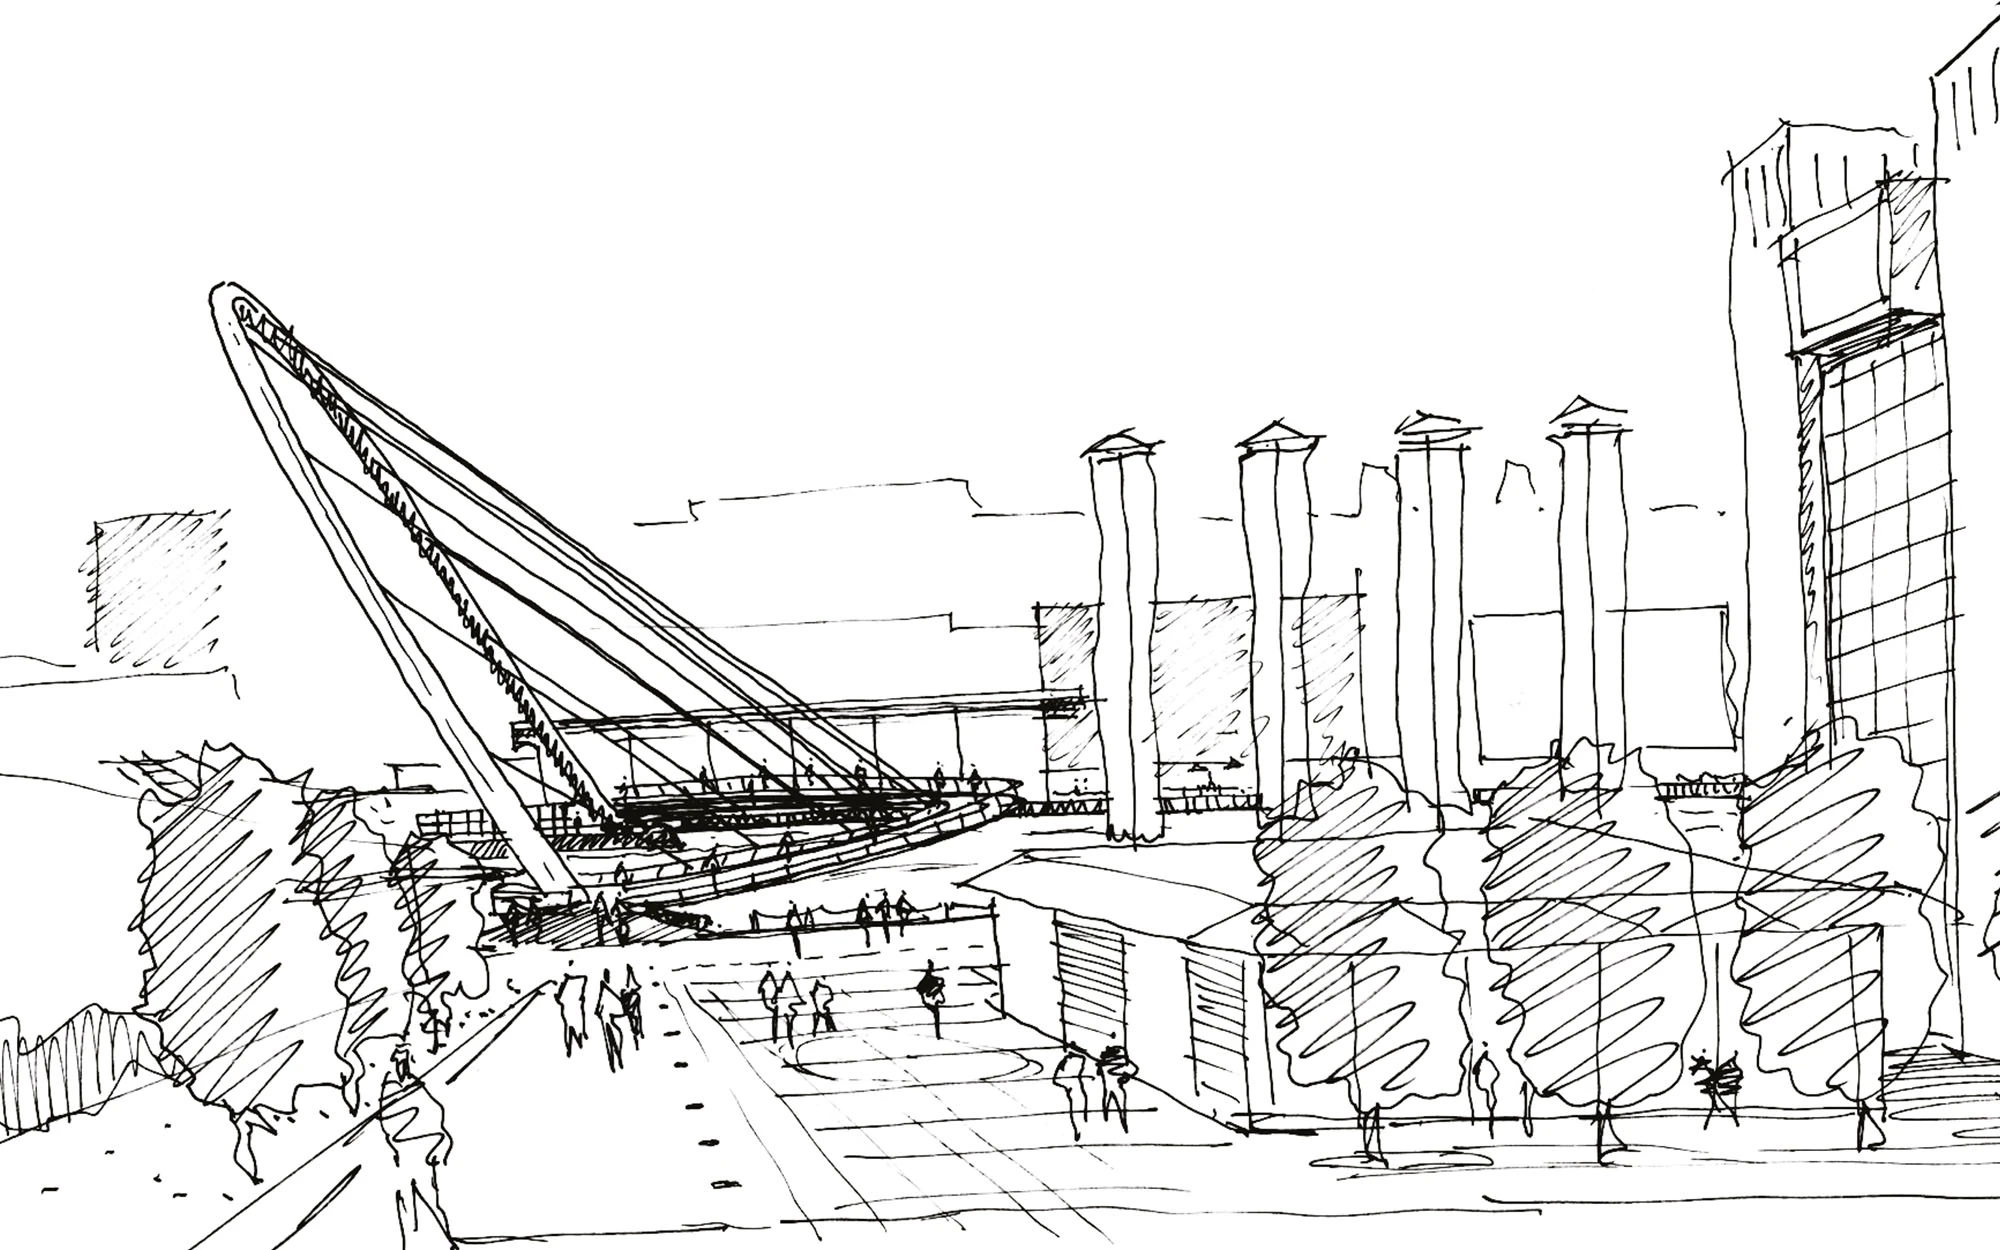 Concept sketch of Gateshead Millennium Bridge